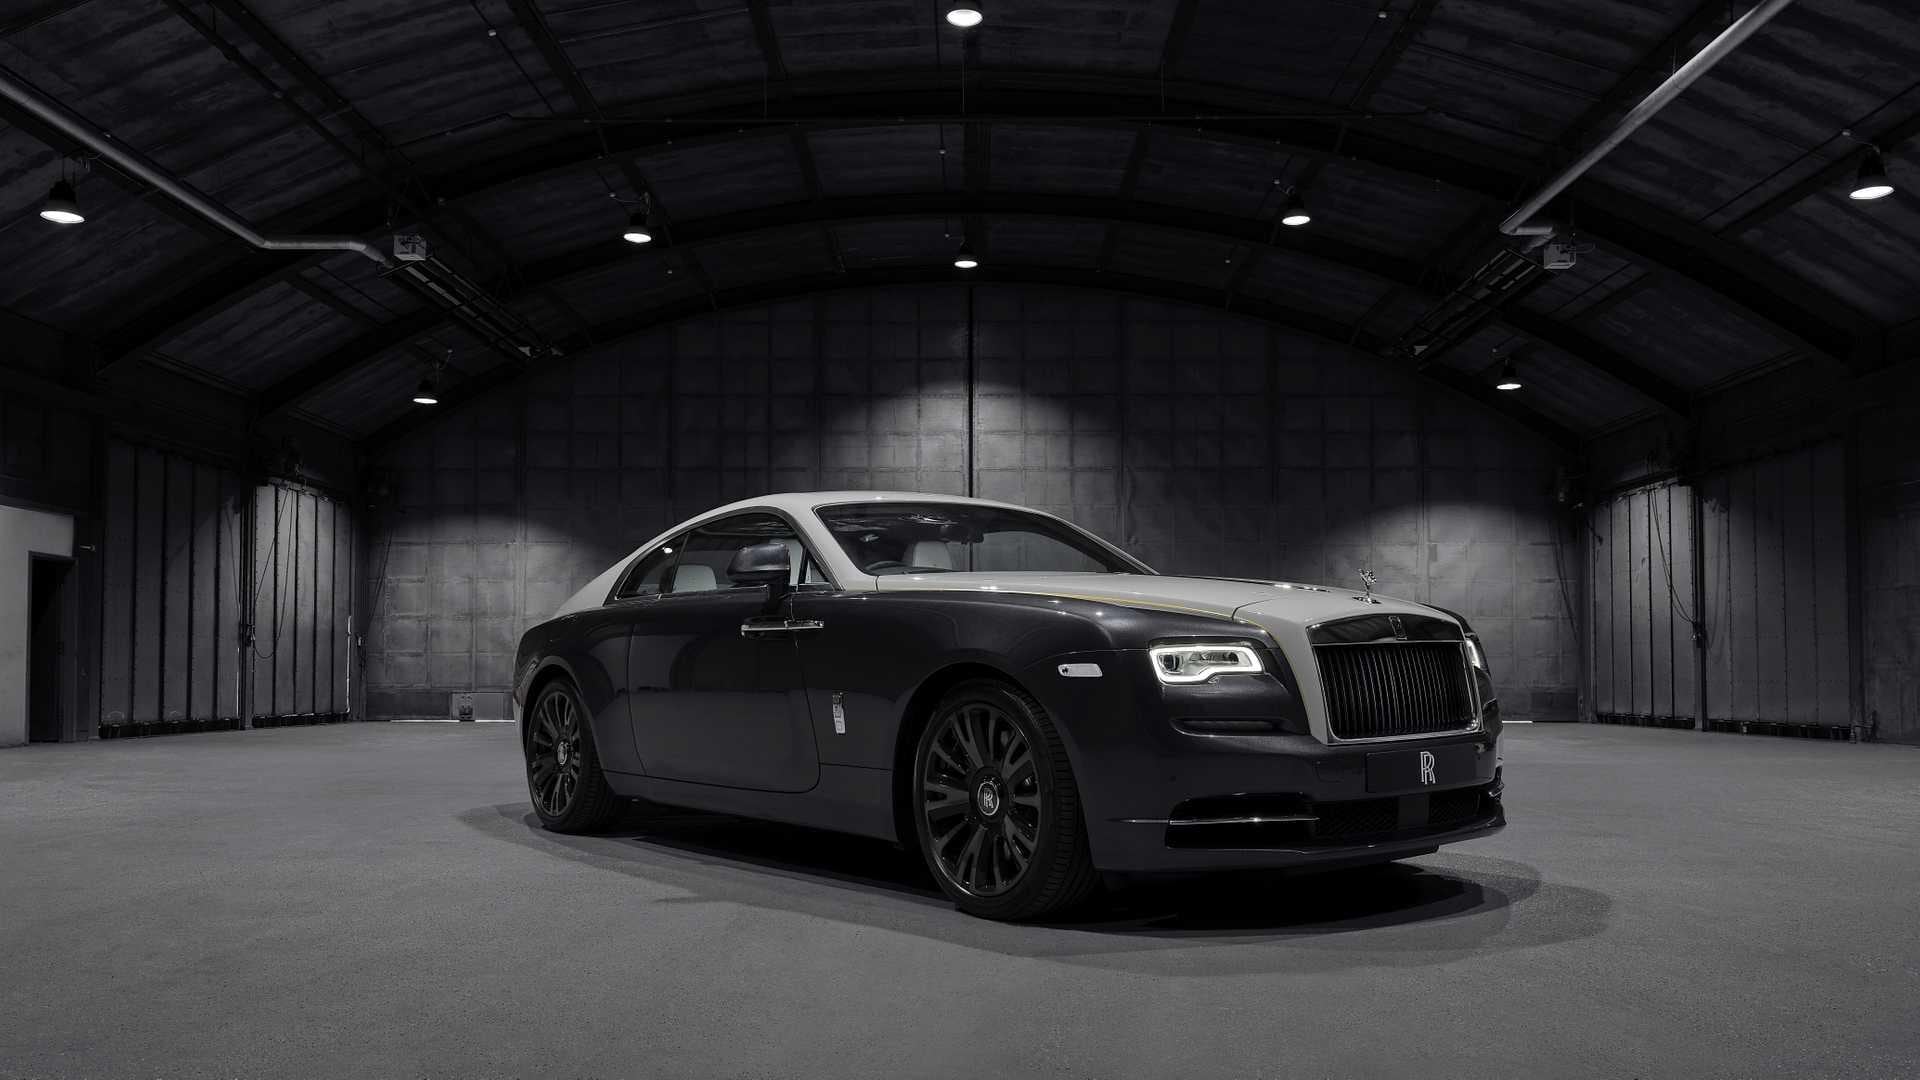 Solo se crearán 50 unidades del Rolls-Royce Wraith Eagle VIII. Aún se desconoce el precio que alcanzará. (Fotos: Rolls-Royce).